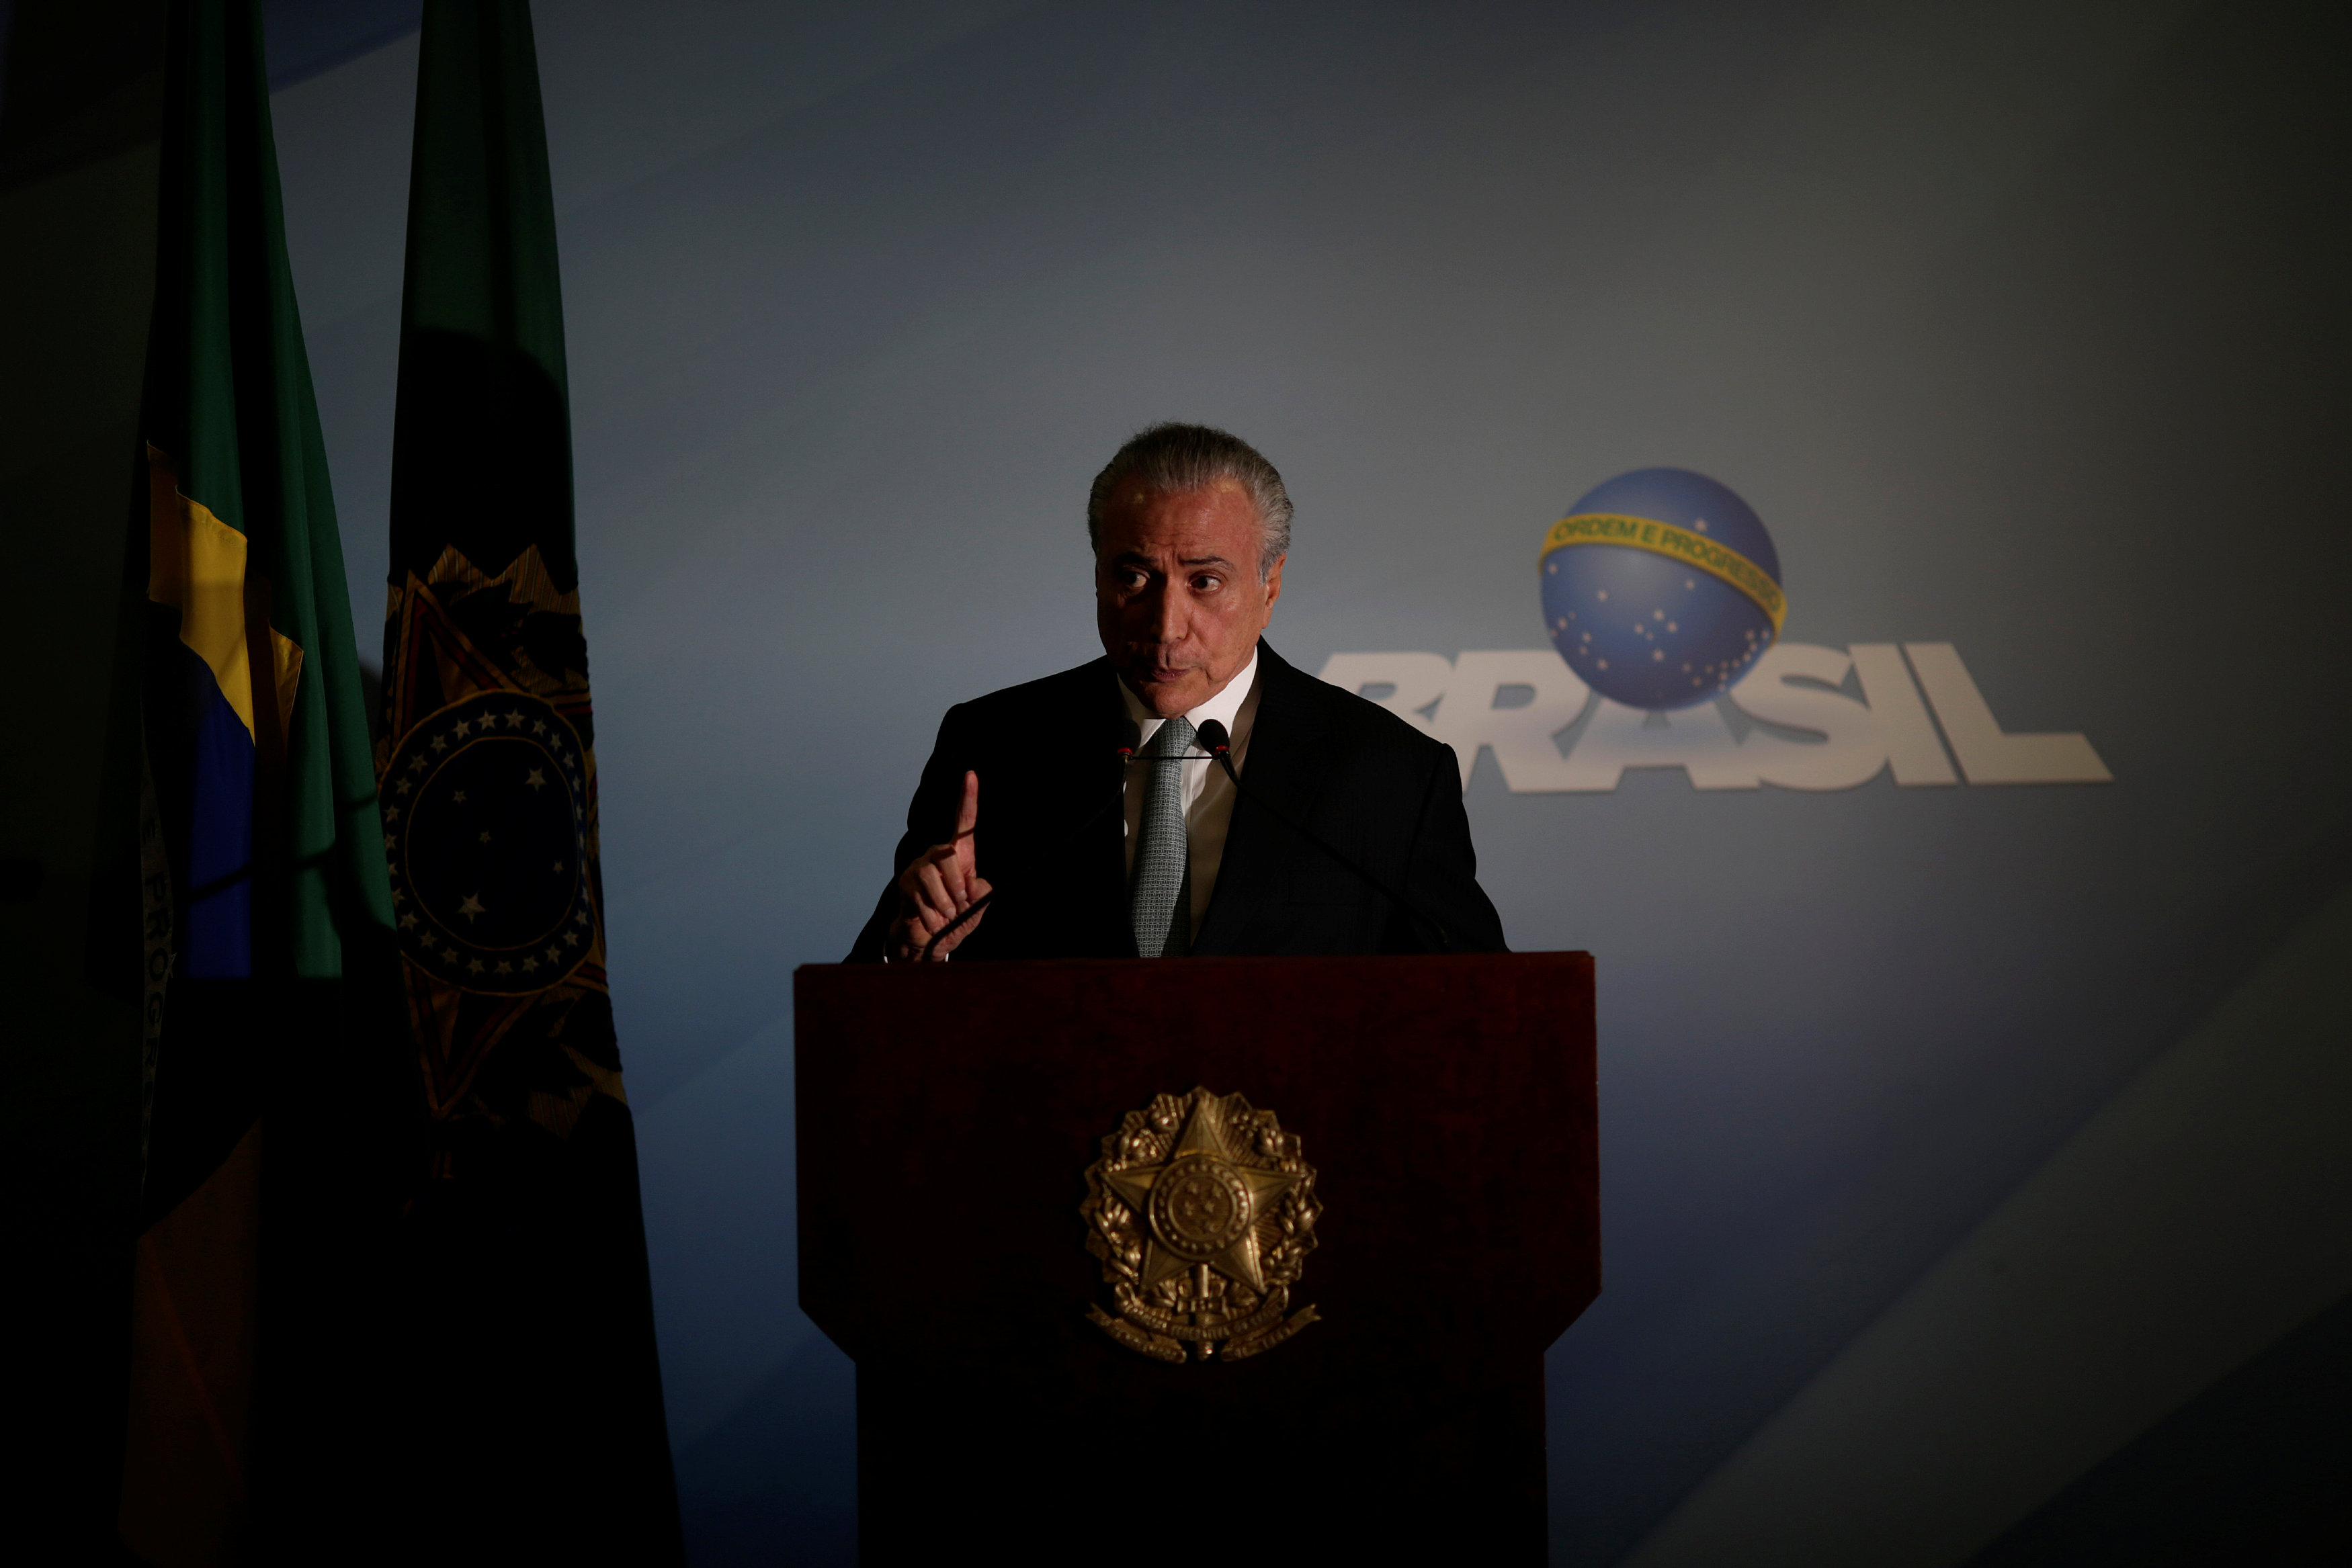 El presidente de facto de Brasil, Michel Temer, es investigado oficialmente por el caso de corrupción de Lava Jato.